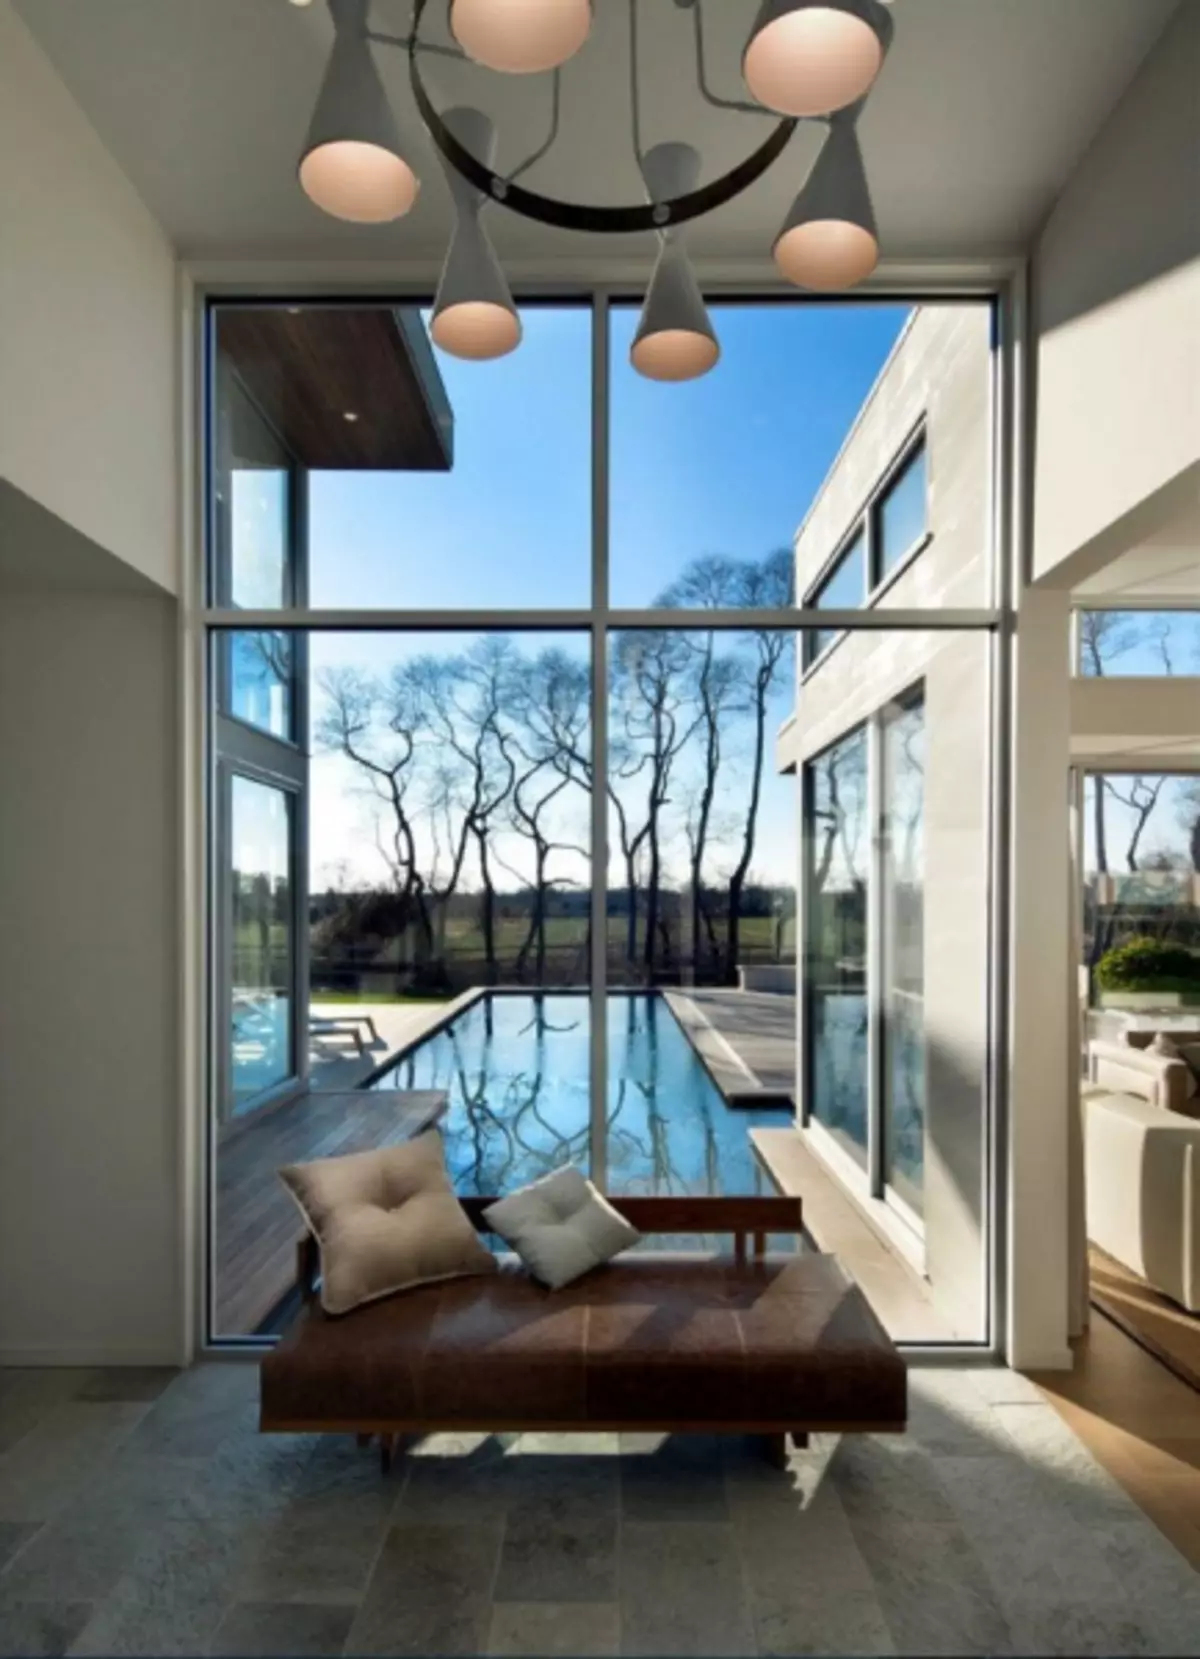 Panoramska okna v notranjosti: prostor v hiši in možnosti za oblikovanje in uporabo pri oblikovanju apartmaja (47 fotografij)